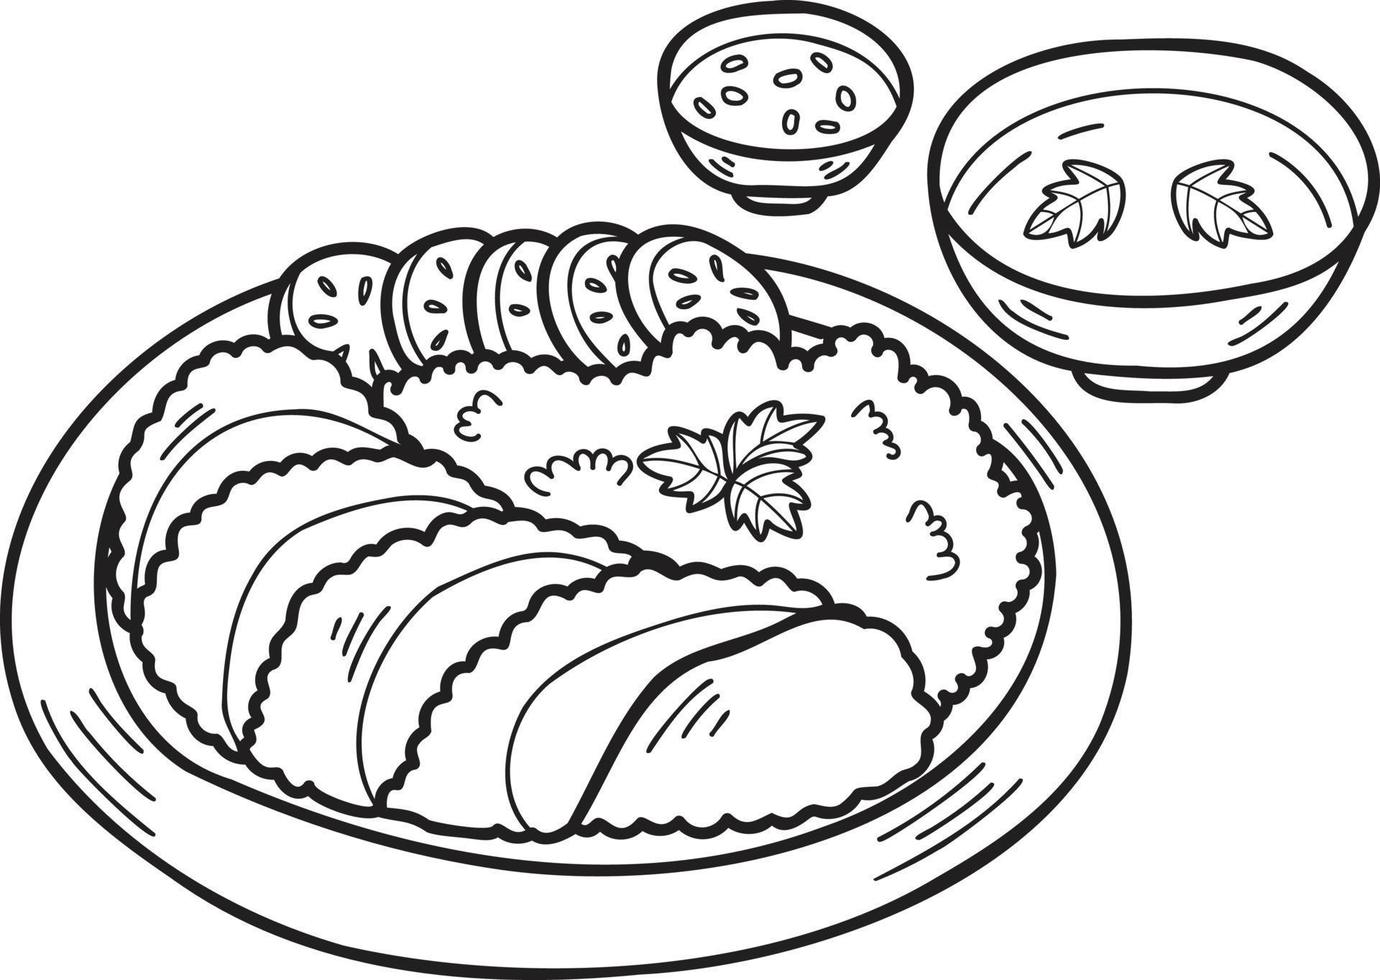 cerdo frito dibujado a mano con arroz y sopa ilustración de comida china y japonesa vector